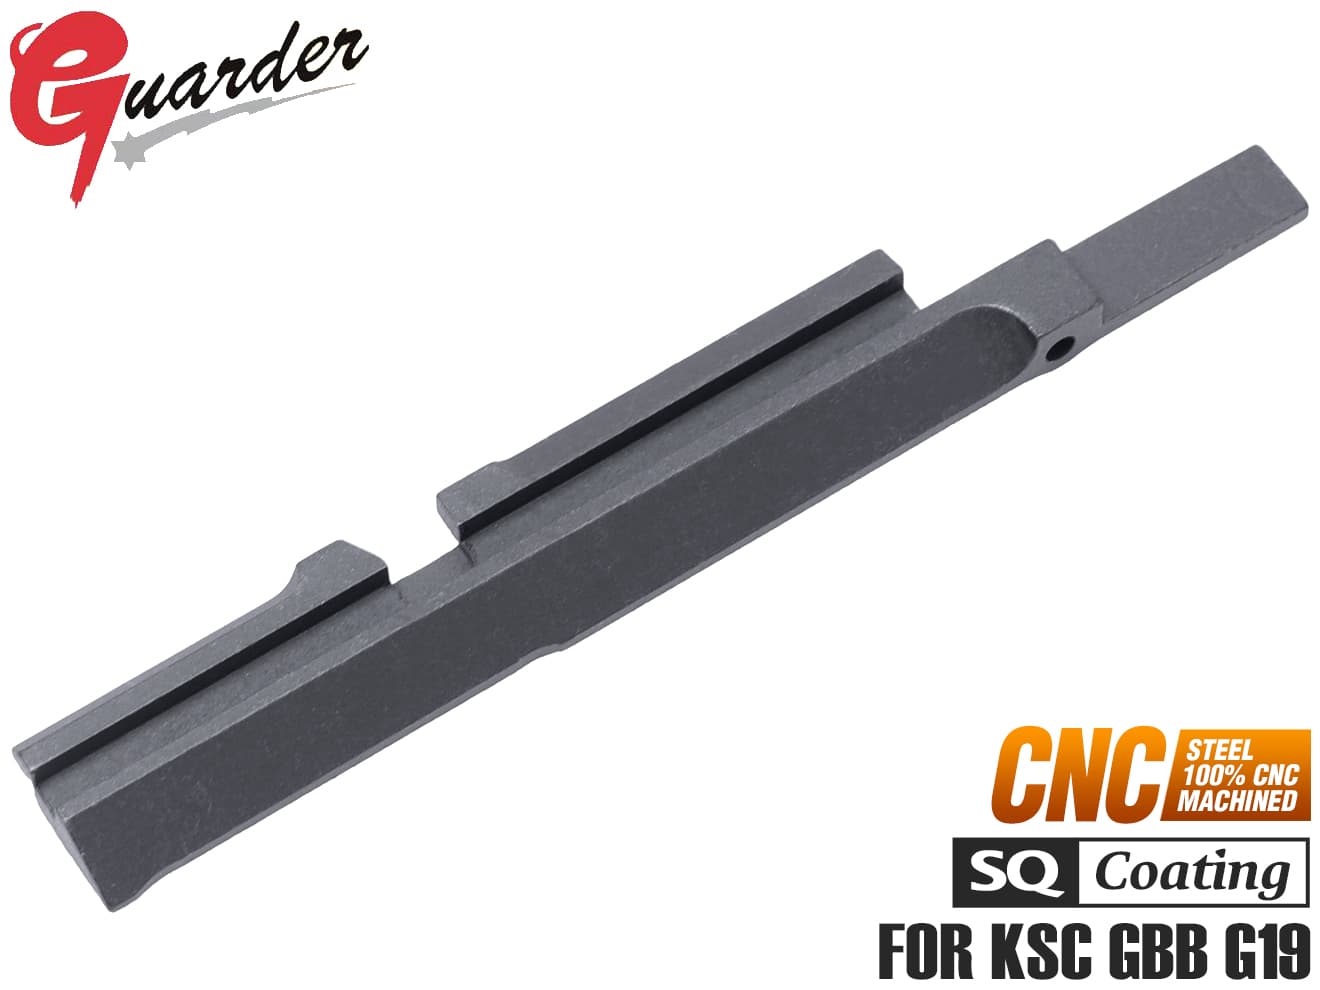 GUARDER スチールCNC 強化スライドレール for マルイ Hi-CAPA GOLD 